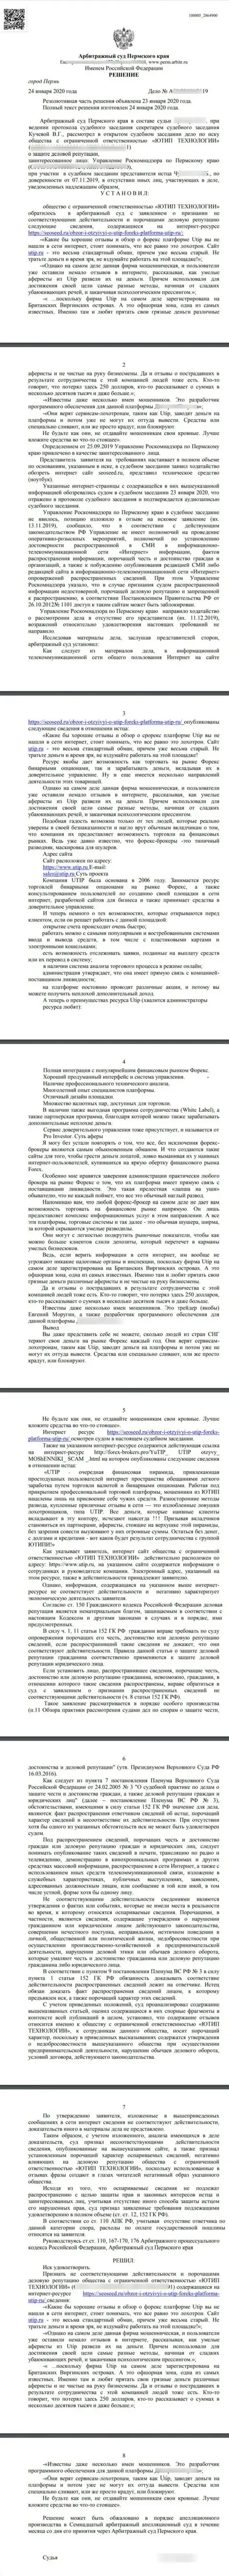 Исковое заявление разводил UTIP в отношении информационного сервиса seoseed ru, который был удовлетворен самым справедливым судом